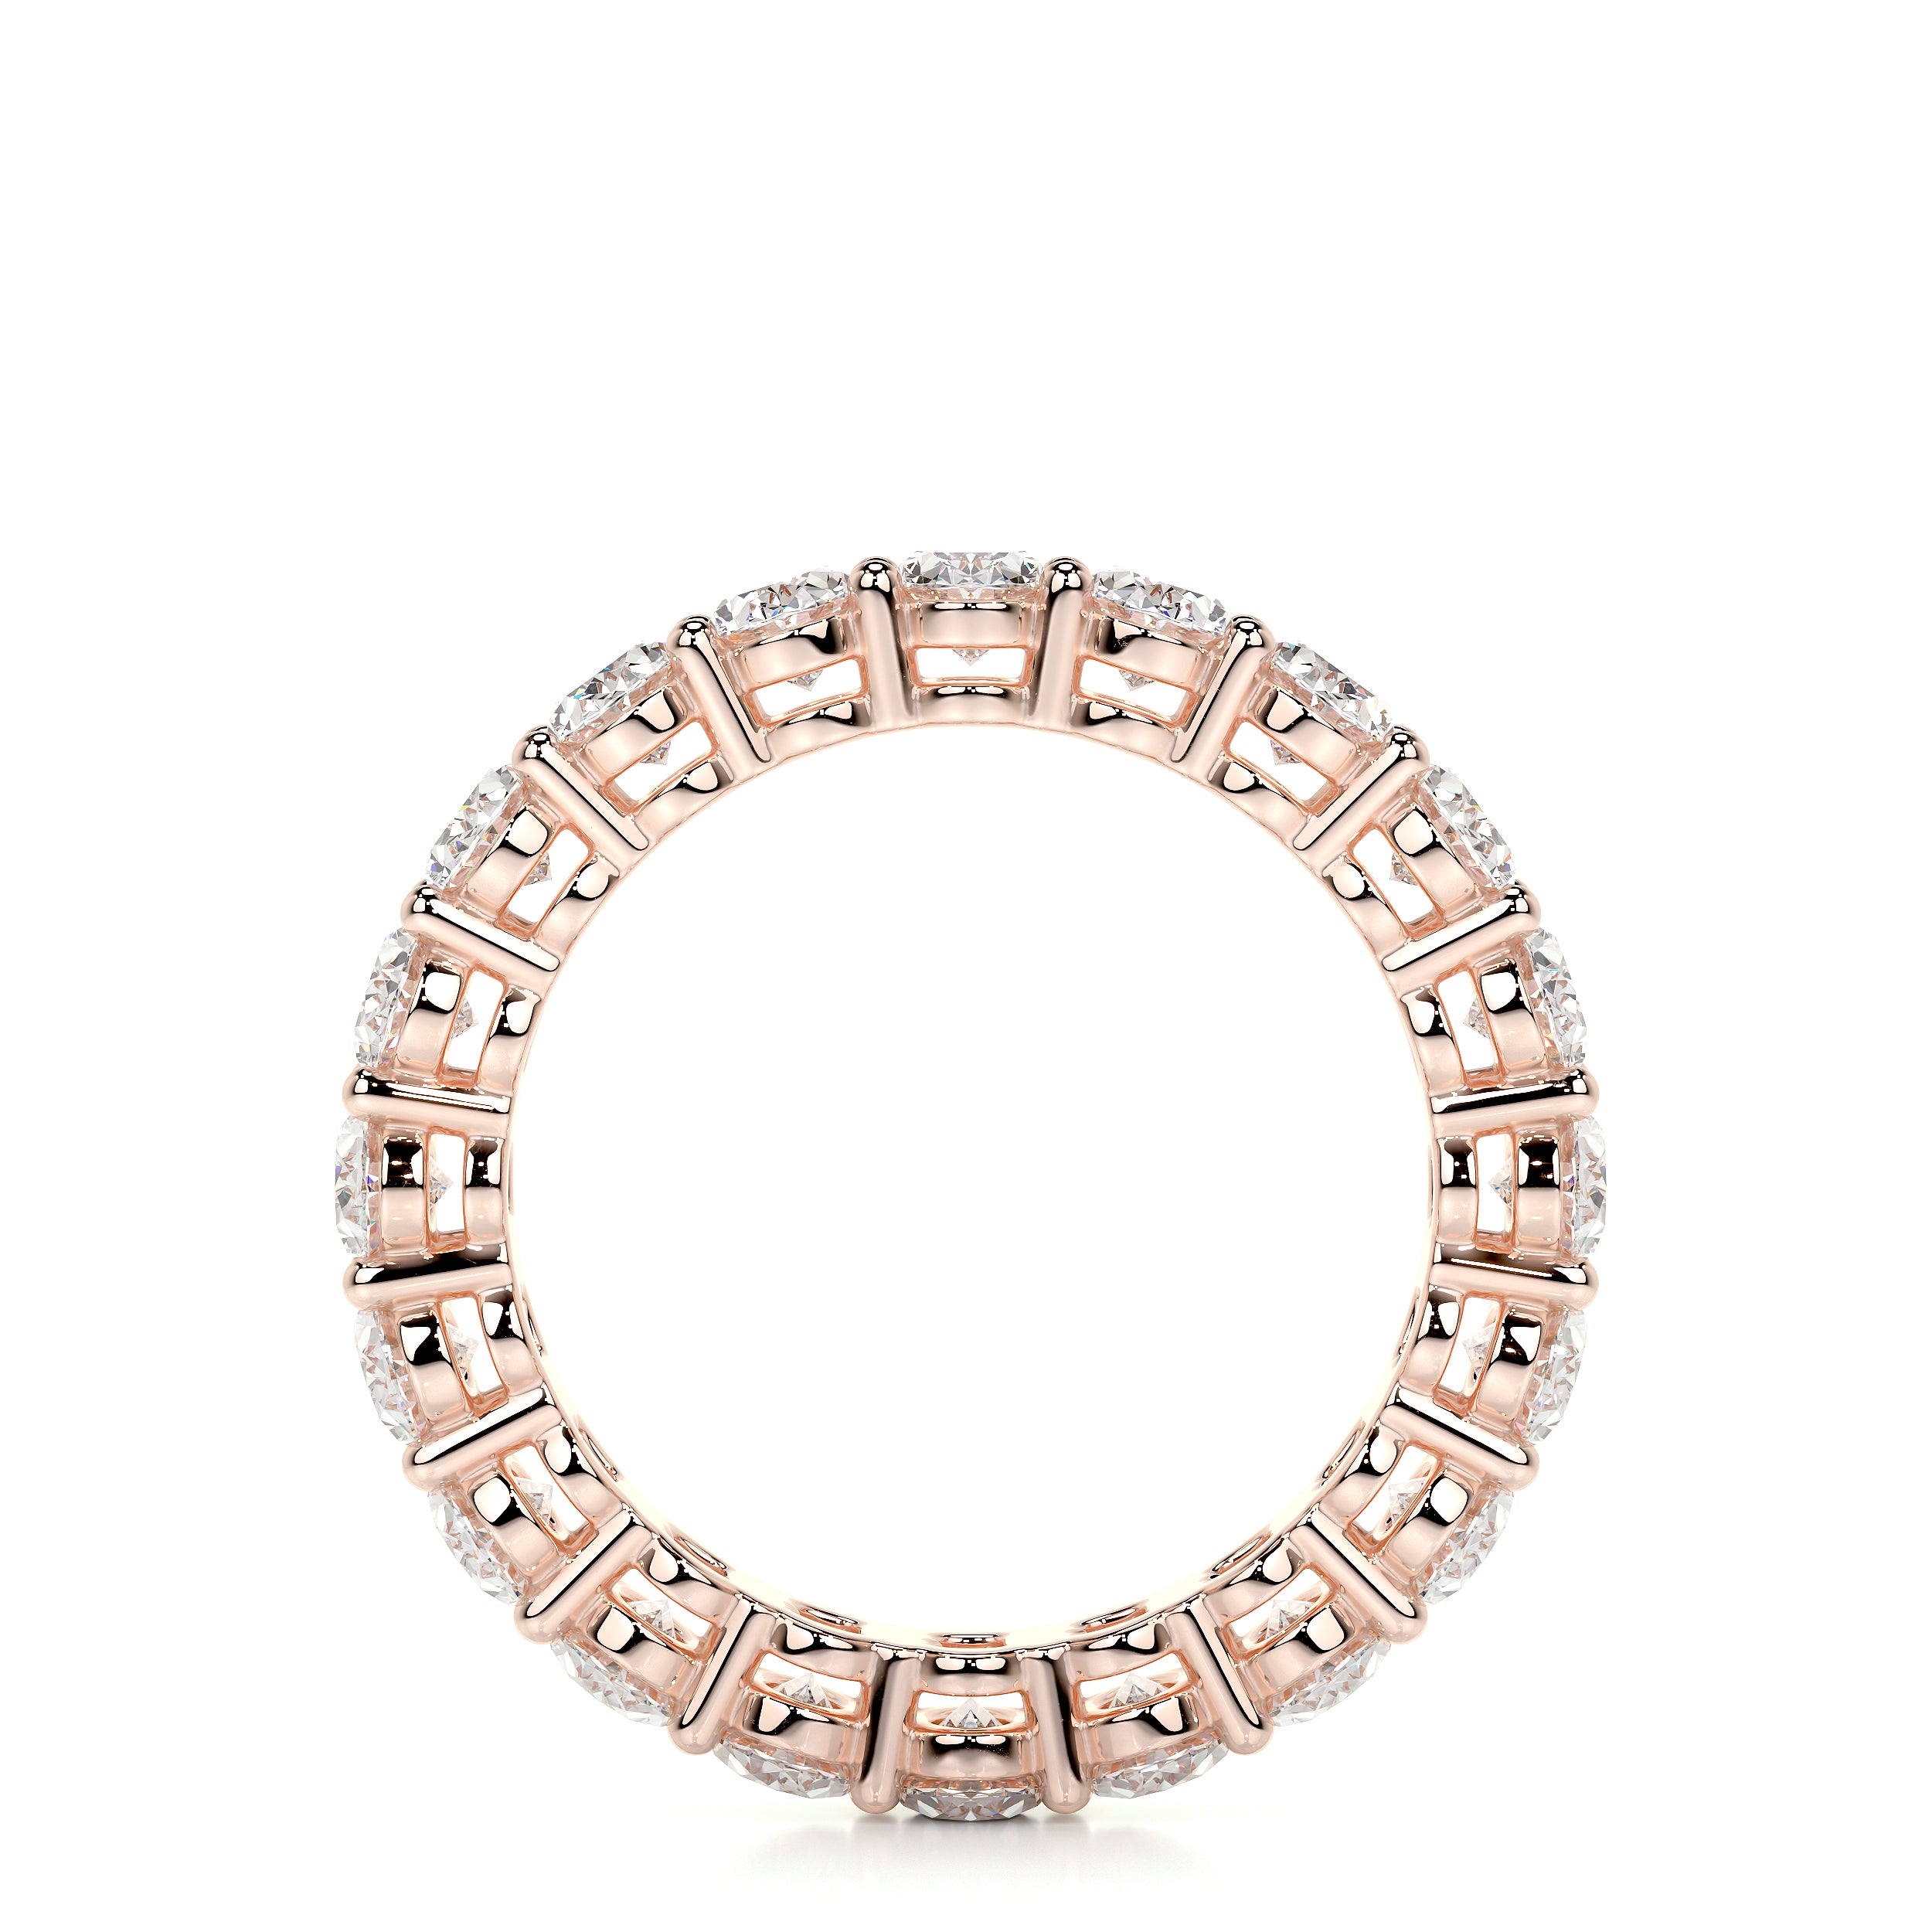 Julia Lab Grown Diamond Wedding Ring   (3.5 Carat) -14K Rose Gold